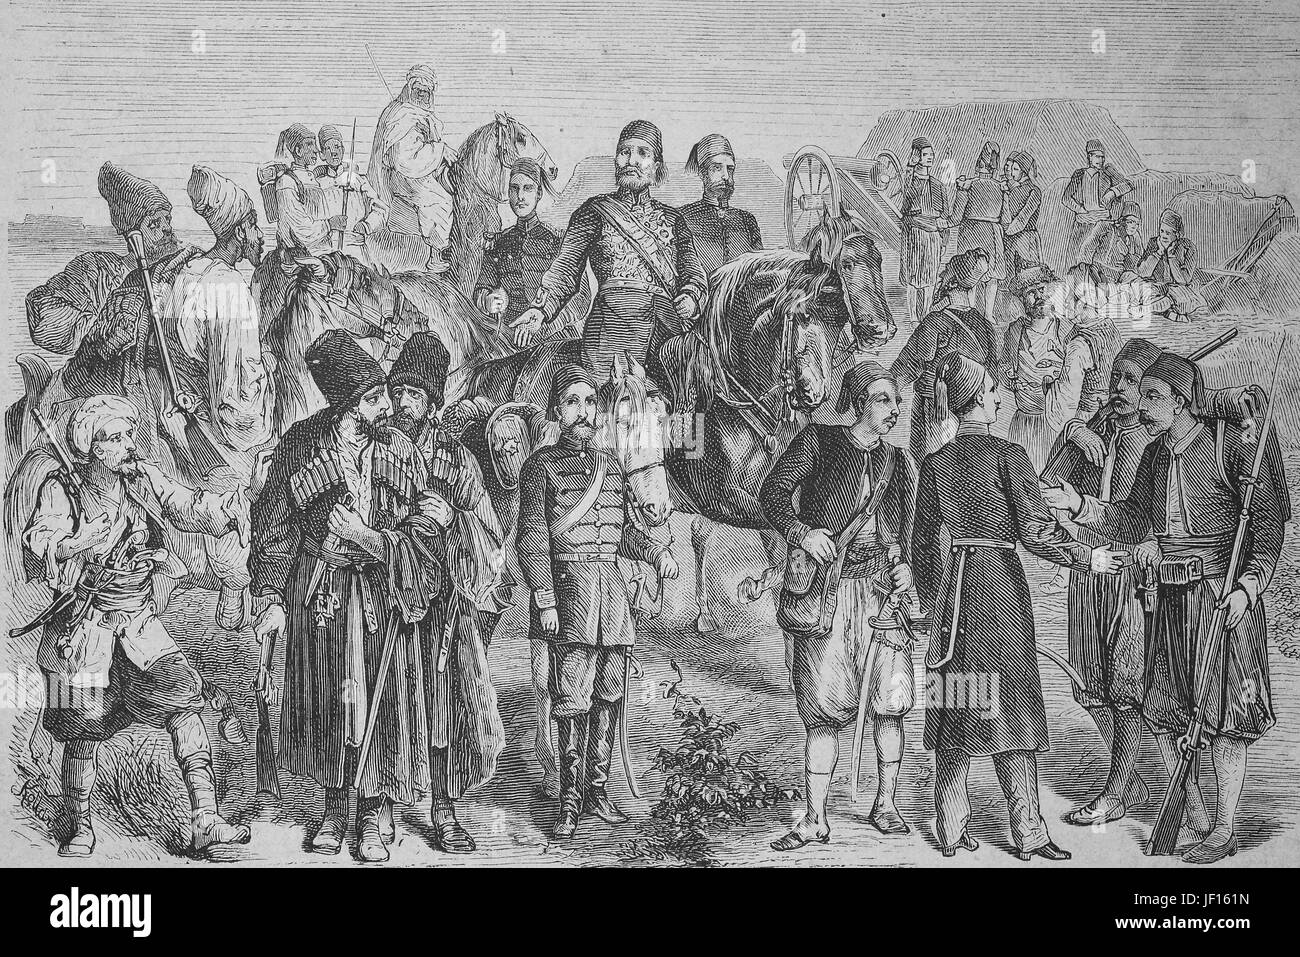 Historische Abbildung: die Uniformen der türkischen Armee im Jahr 1875, der Türkei, Digital verbesserte Reproduktion von einem ursprünglichen Drucken von 1888 Stockfoto